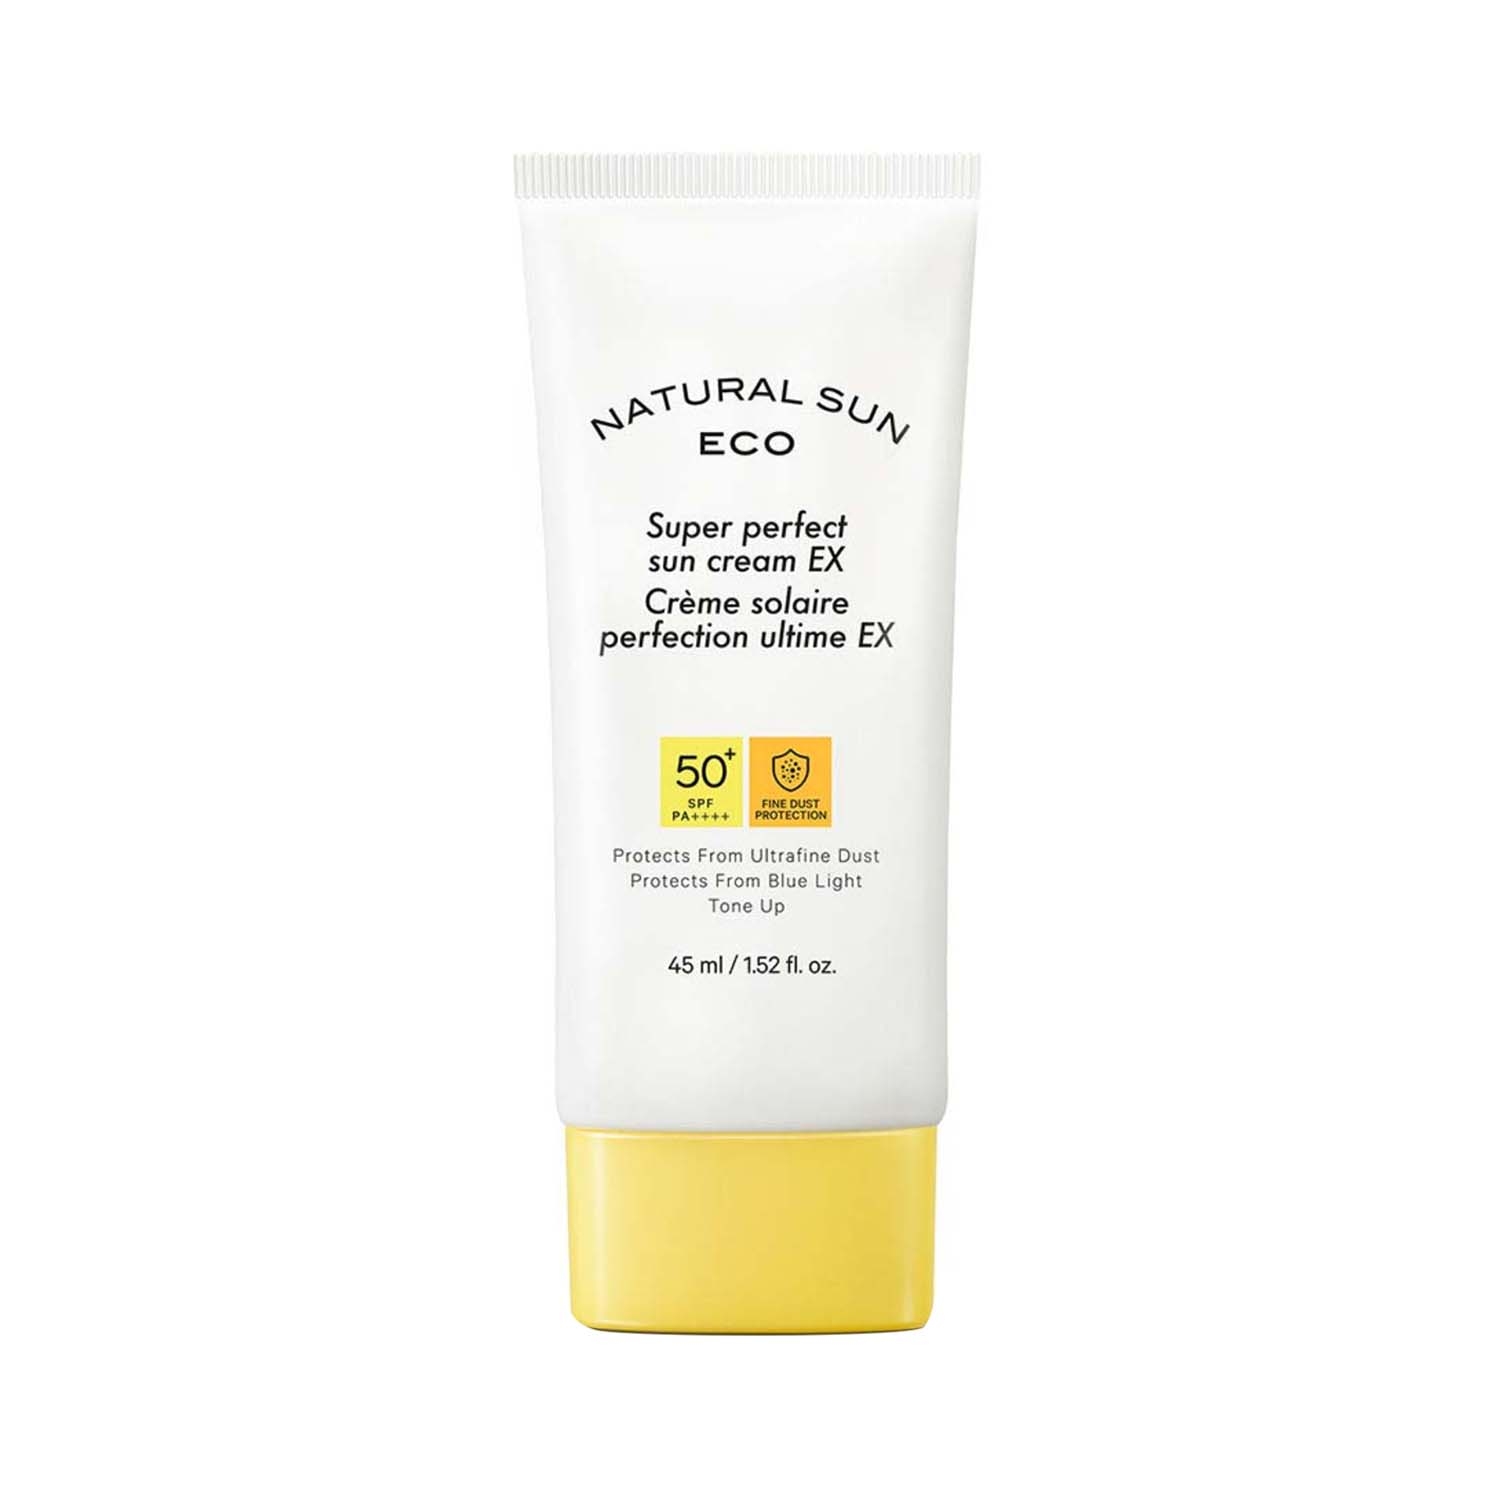 The Face Shop | The Face Shop Naturalsun Eco Super Perfect SPF 50+ Sun Cream EX (45ml)